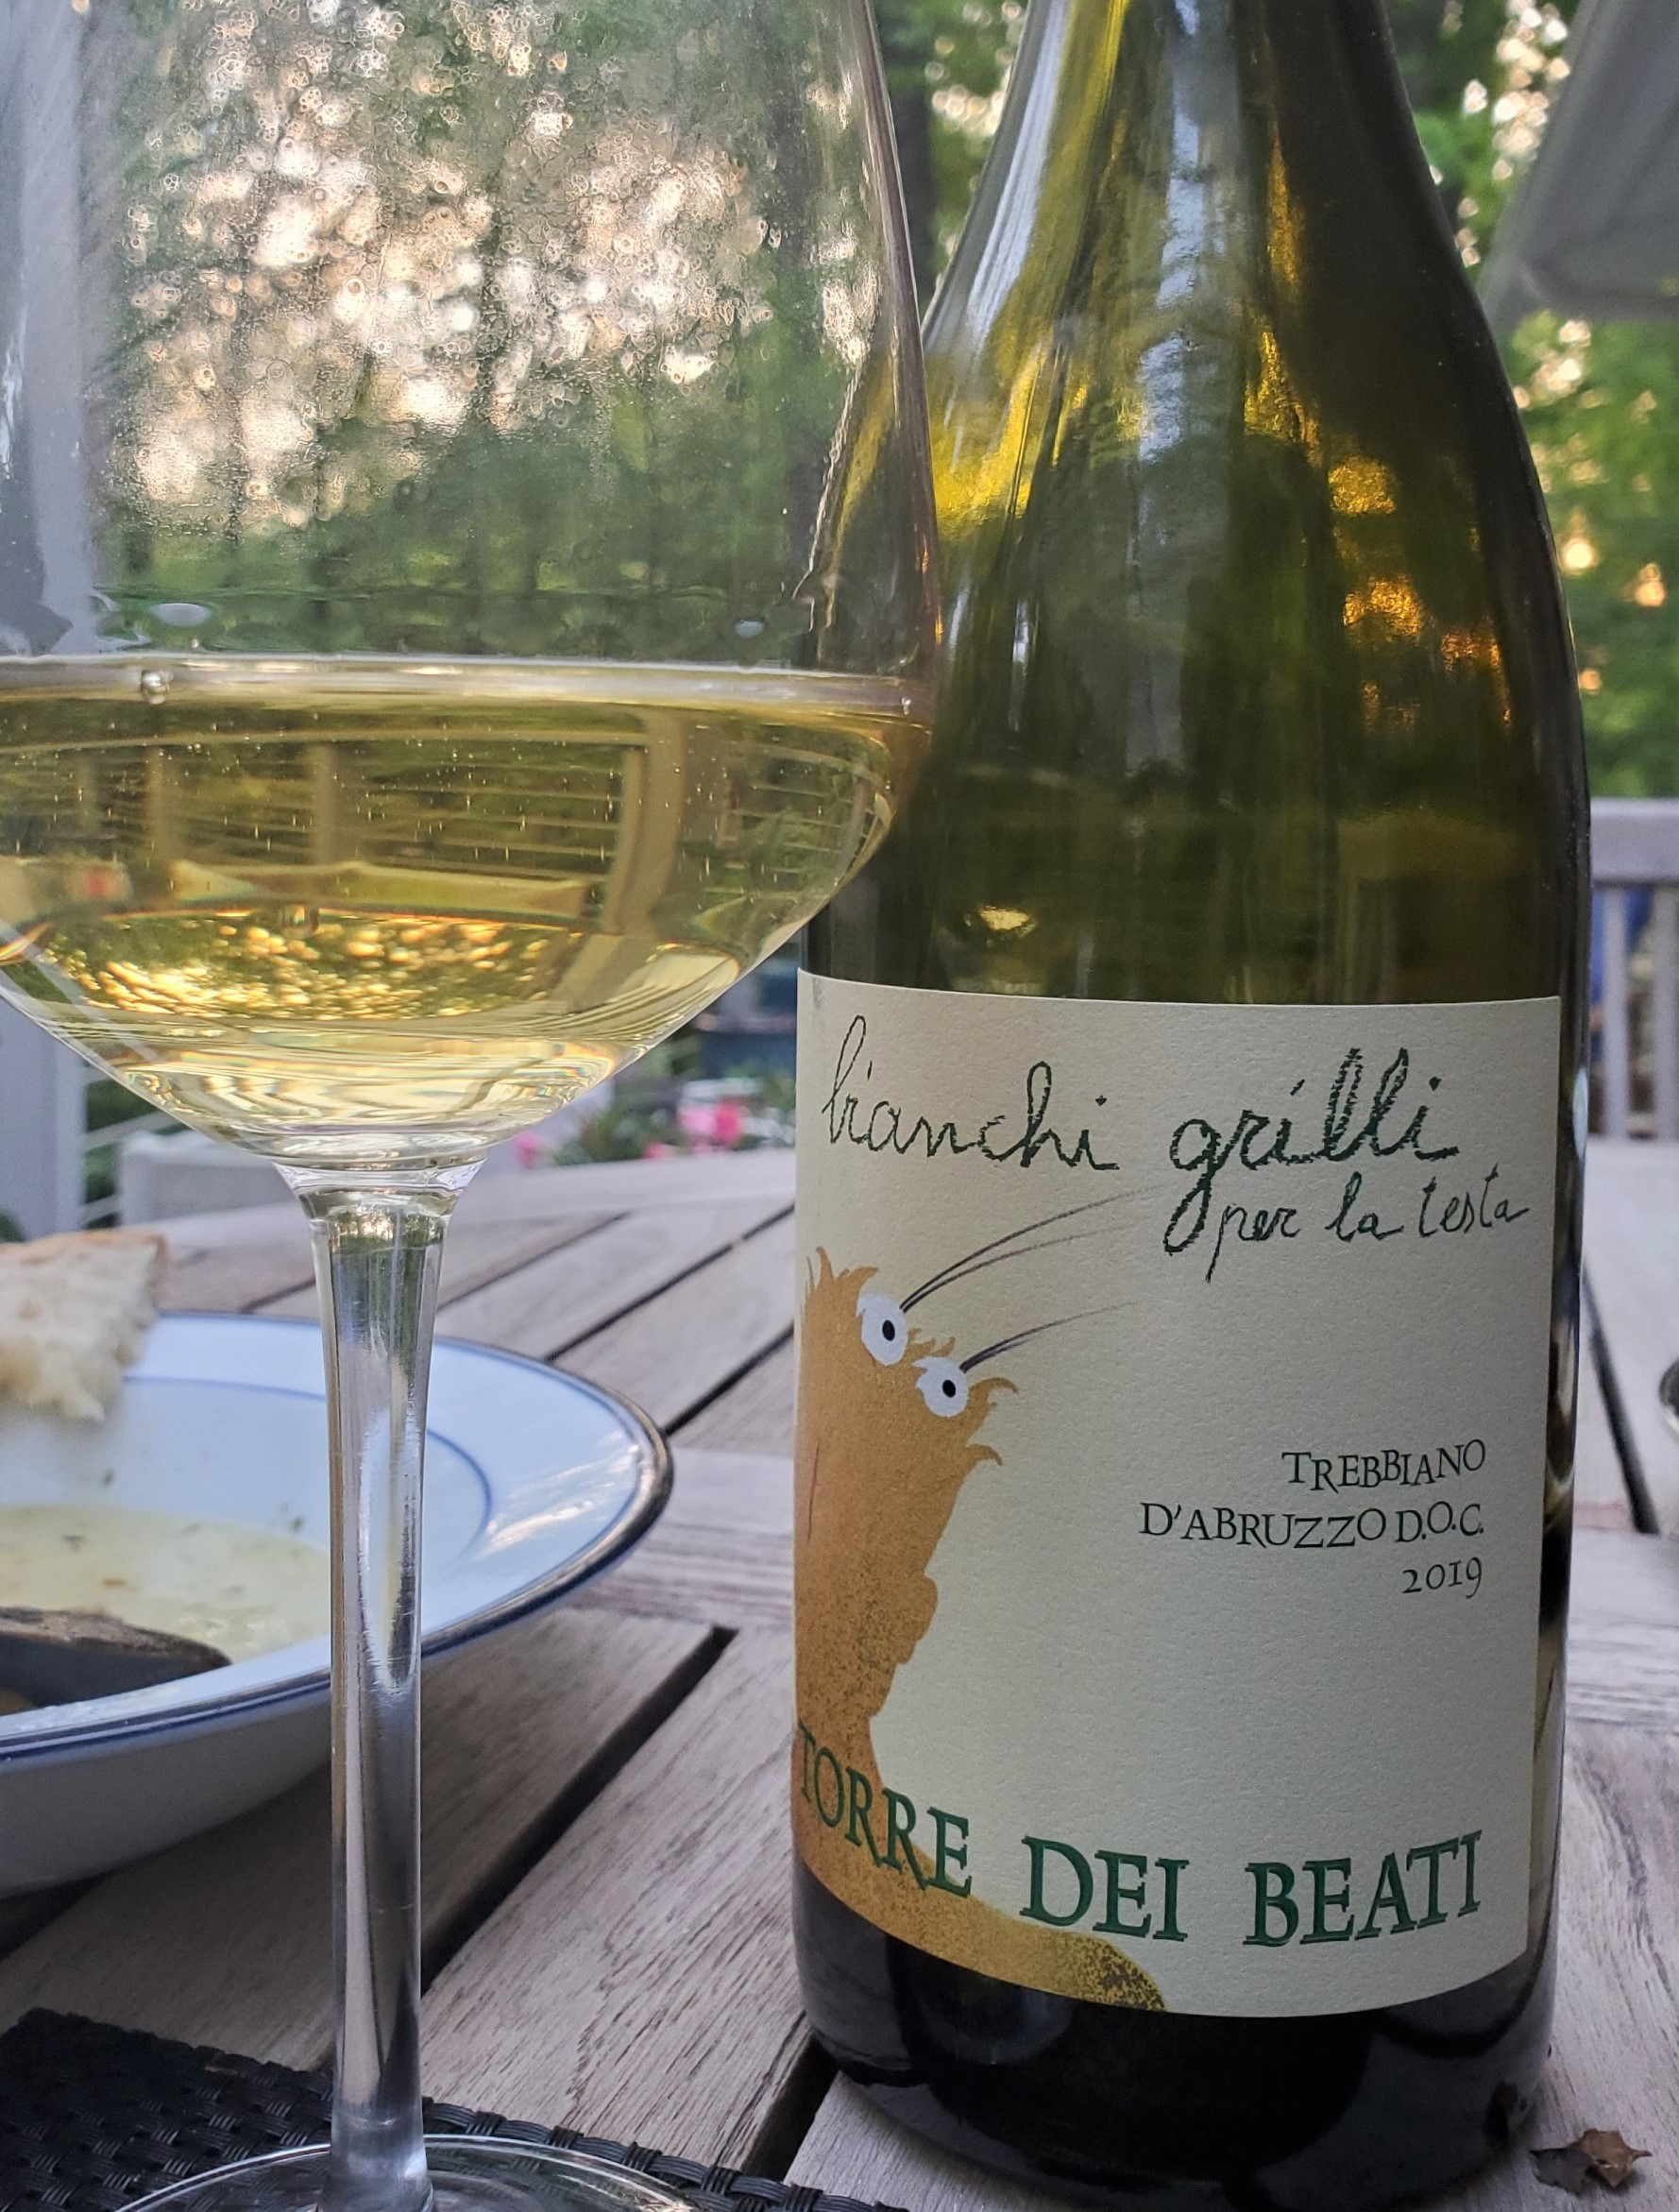 2019 "Bianchi Grilli Per la Testa" Trebbiano from the Torre dei Beati winery in Abruzzo